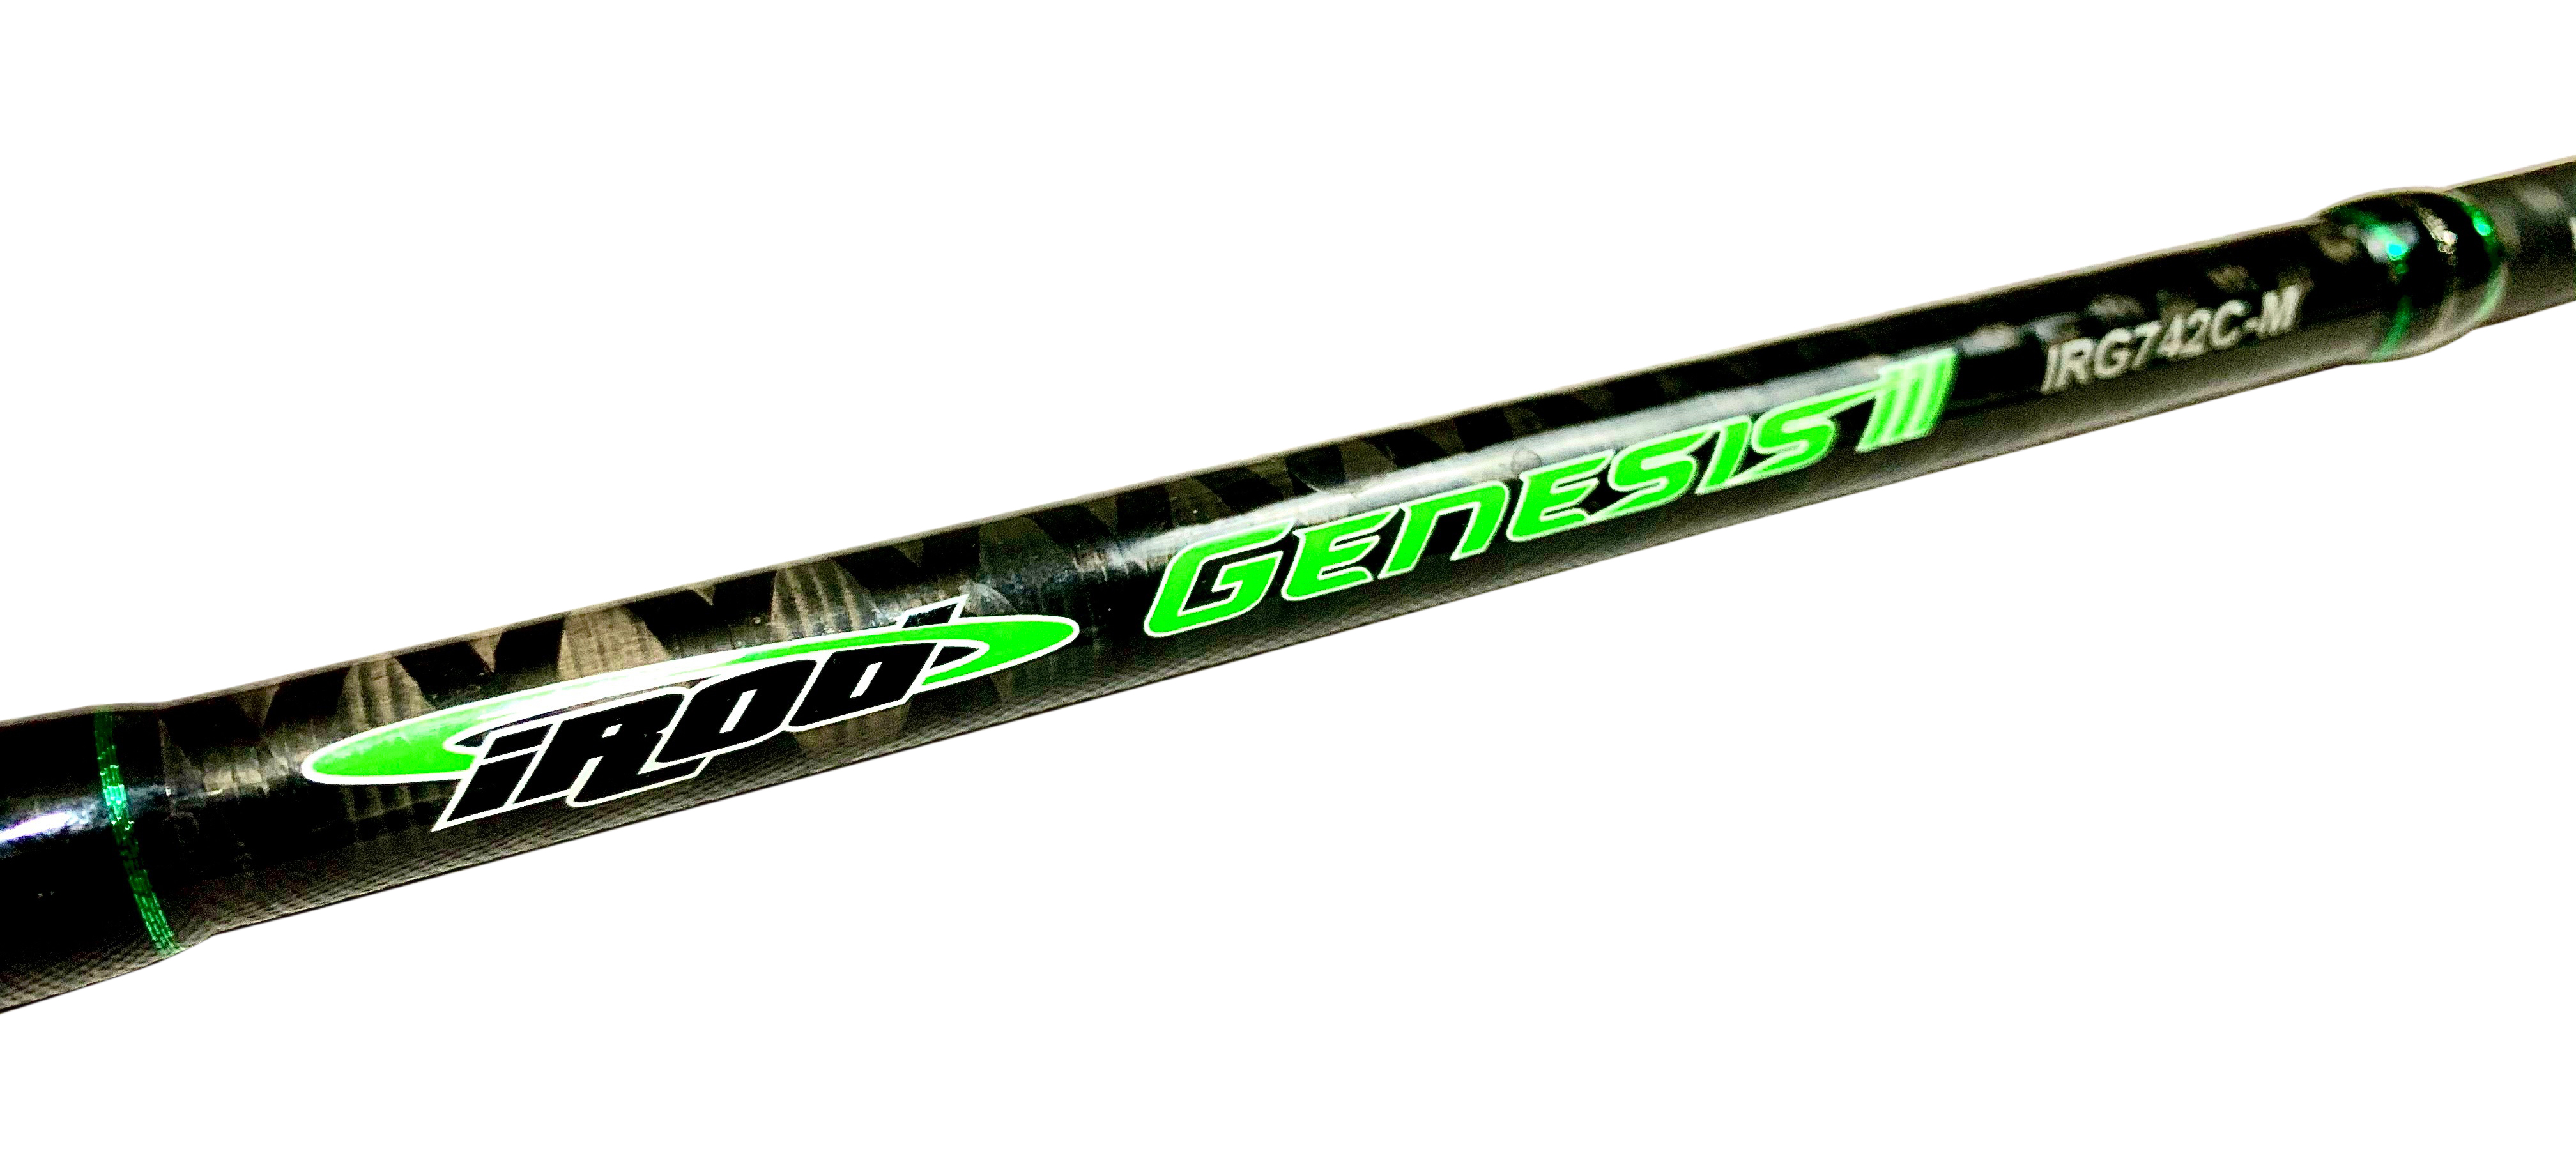 iRod Genesis III 7'7" Medium Fast Spinning Rod 